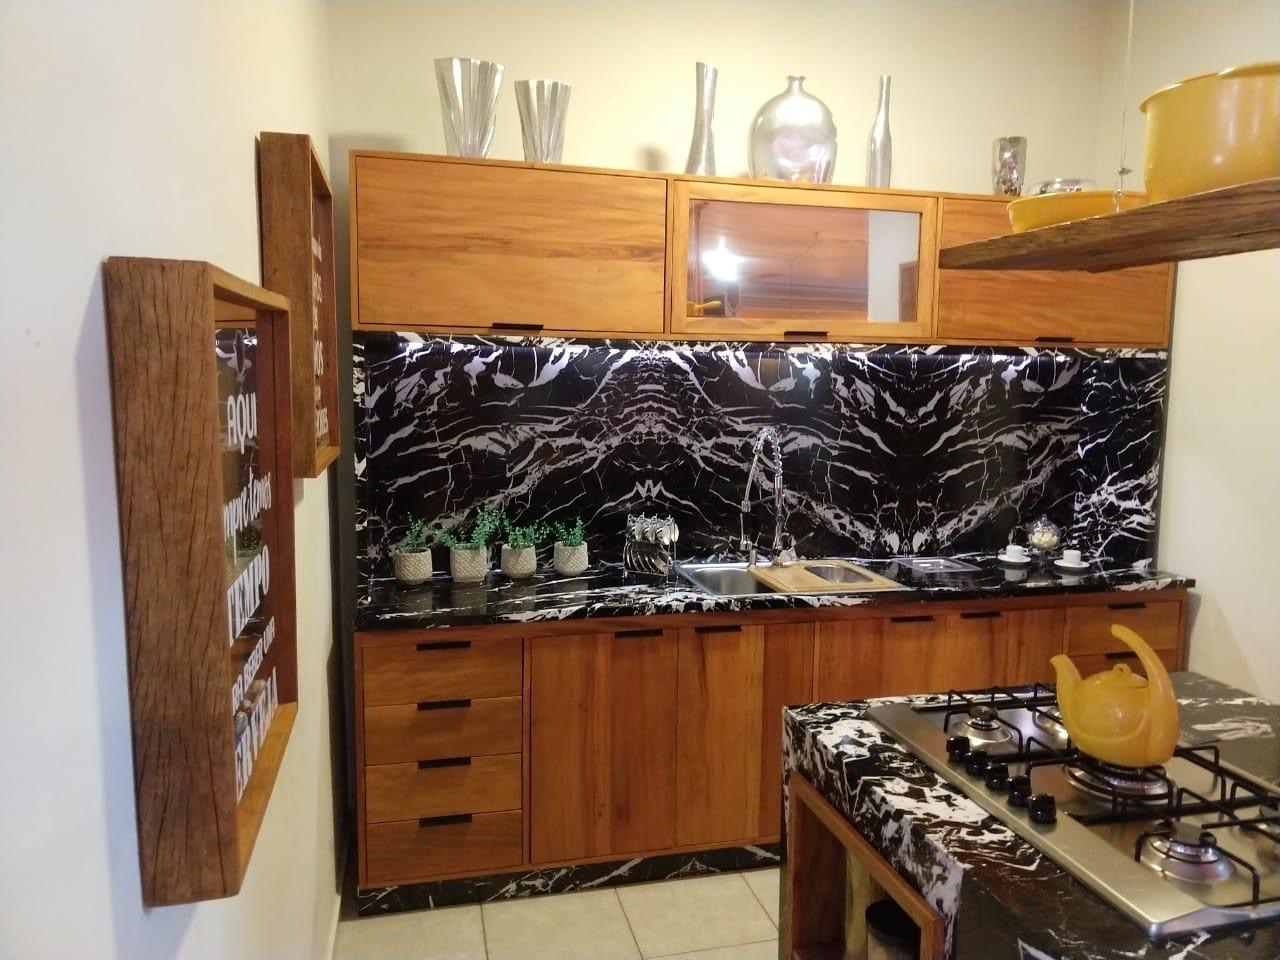 Cozinhas Planejadas em Madeira de Demolição